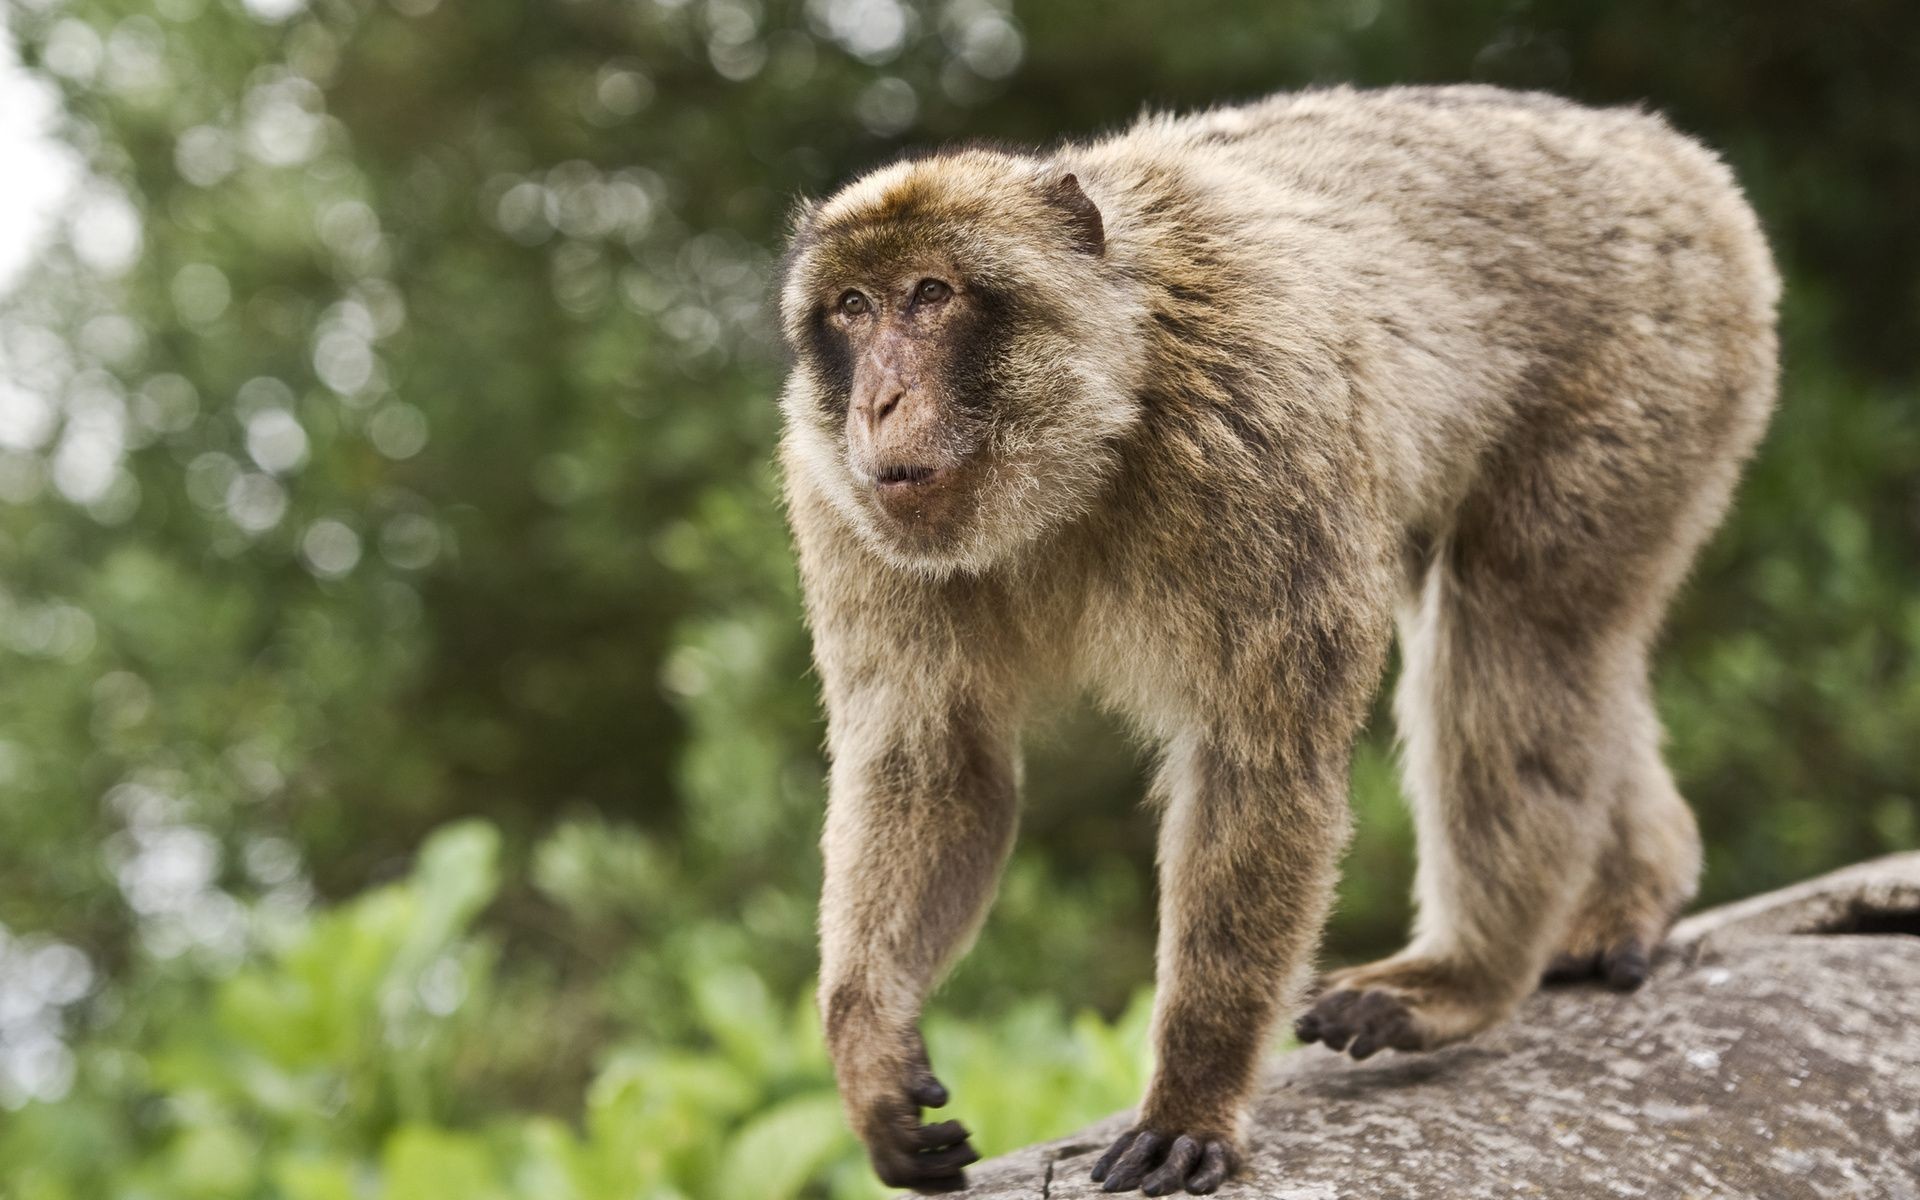 fond d'écran mignon de singe,macaque,primate,animal terrestre,faune,macaque japonais